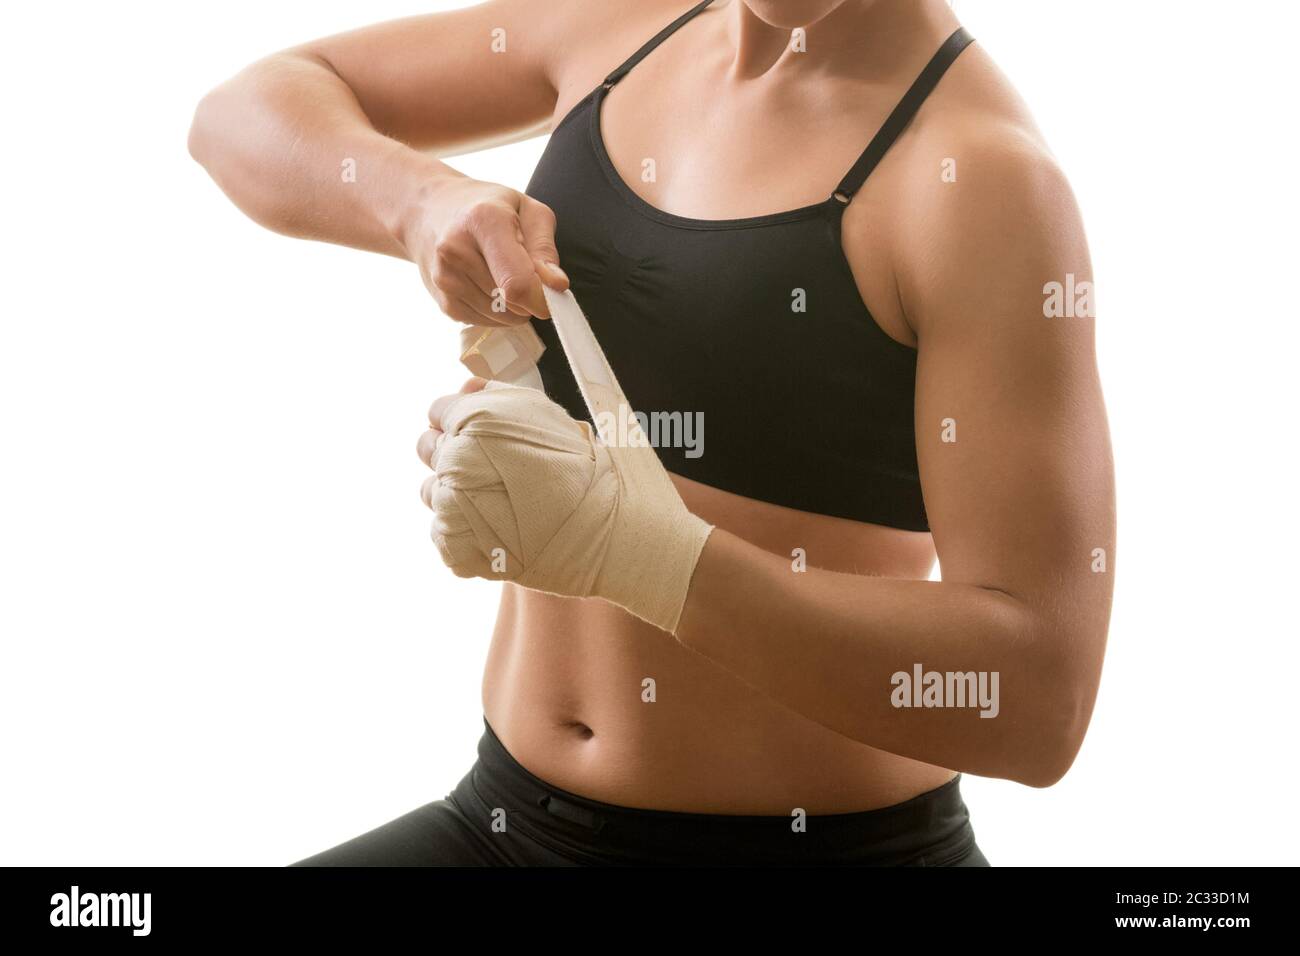 Jeune femme forte musculaire mettant sur le bandage, isolée sur fond blanc. Arts martiaux, forme physique, concept de perte de poids. Banque D'Images